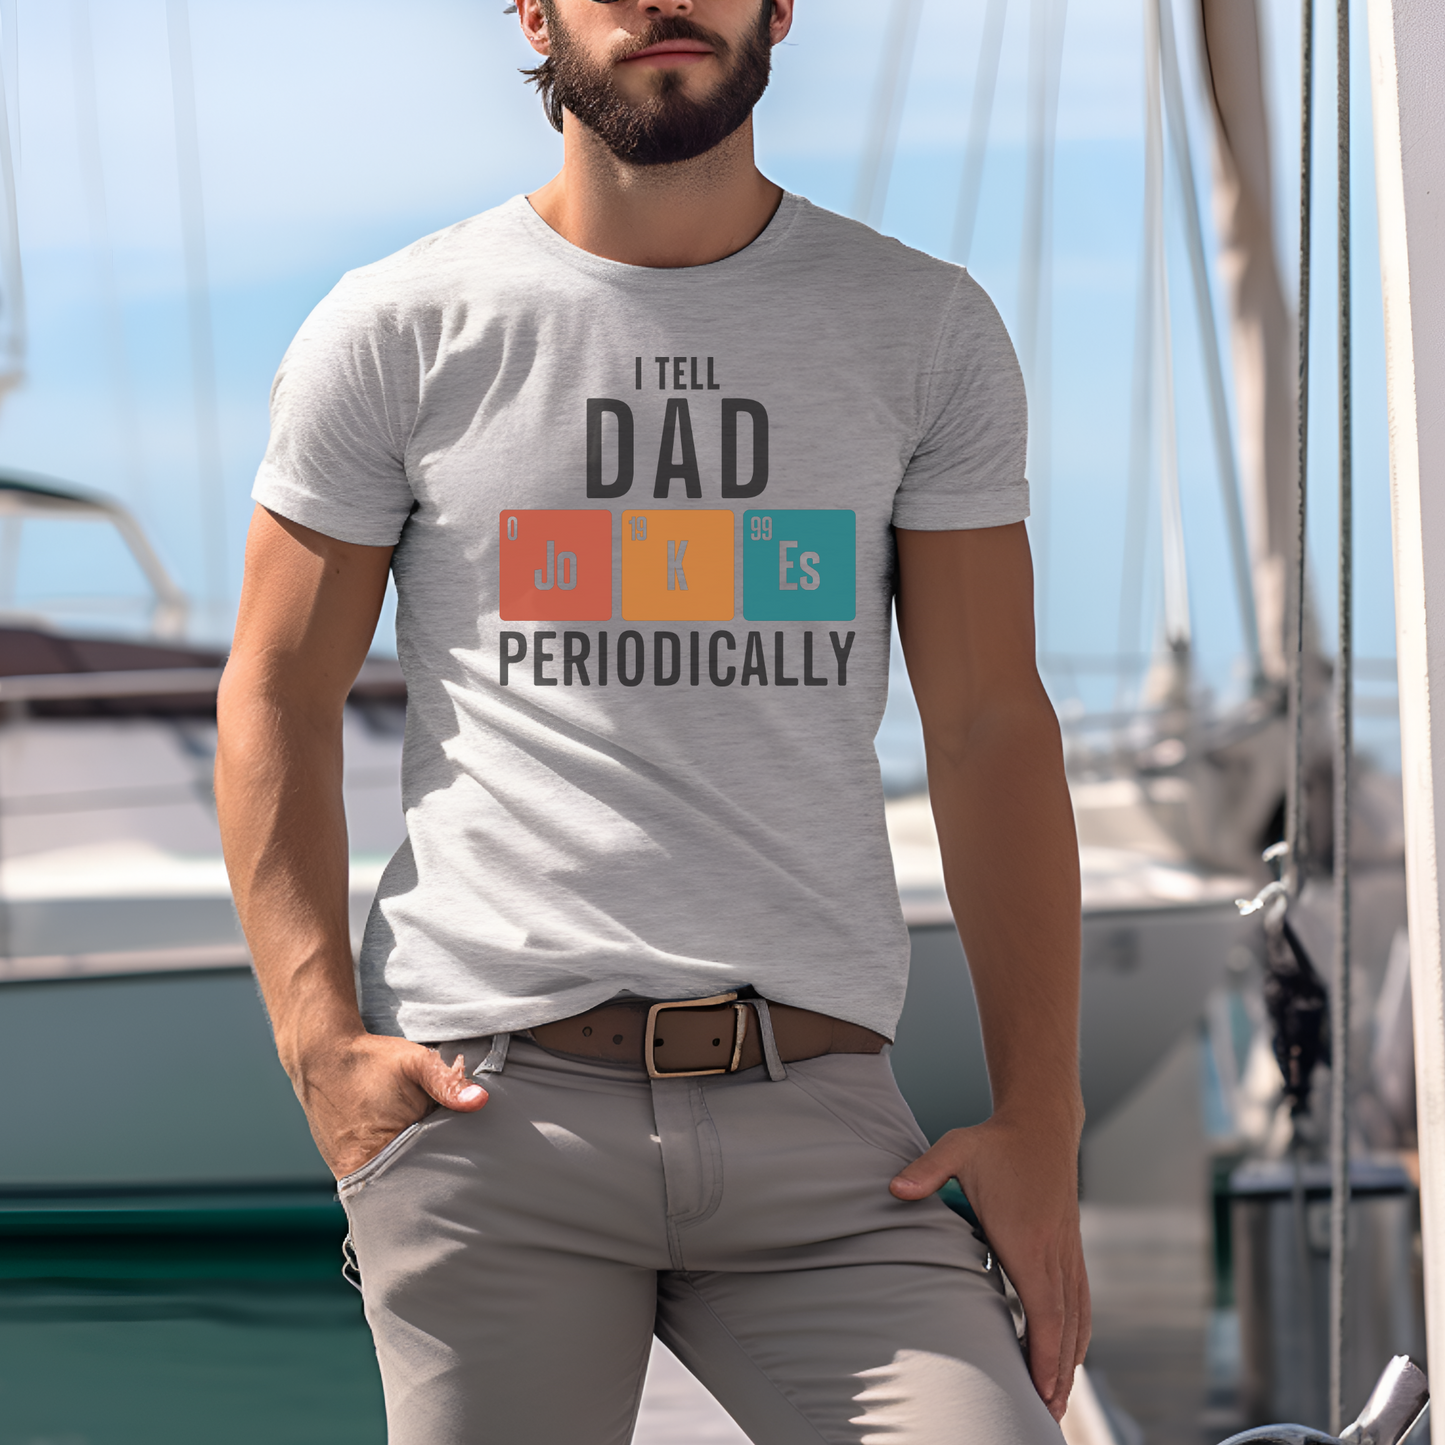 I Tell Dad Jokes Periodically T-shirt